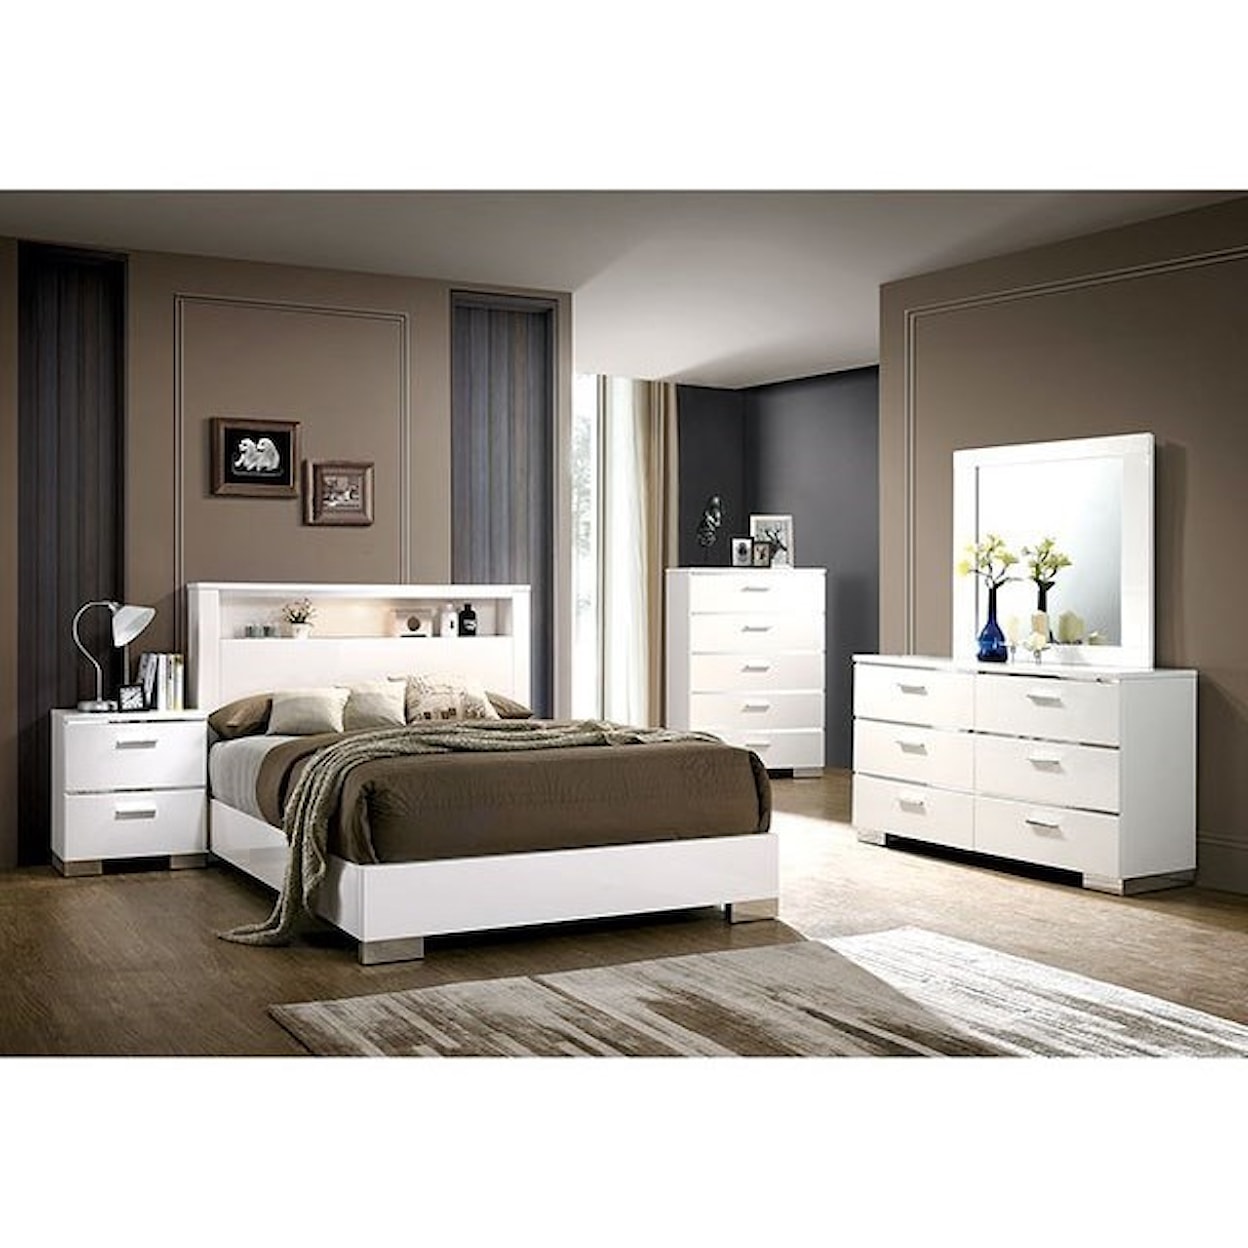 Furniture of America Malte Dresser and Mirror Combination